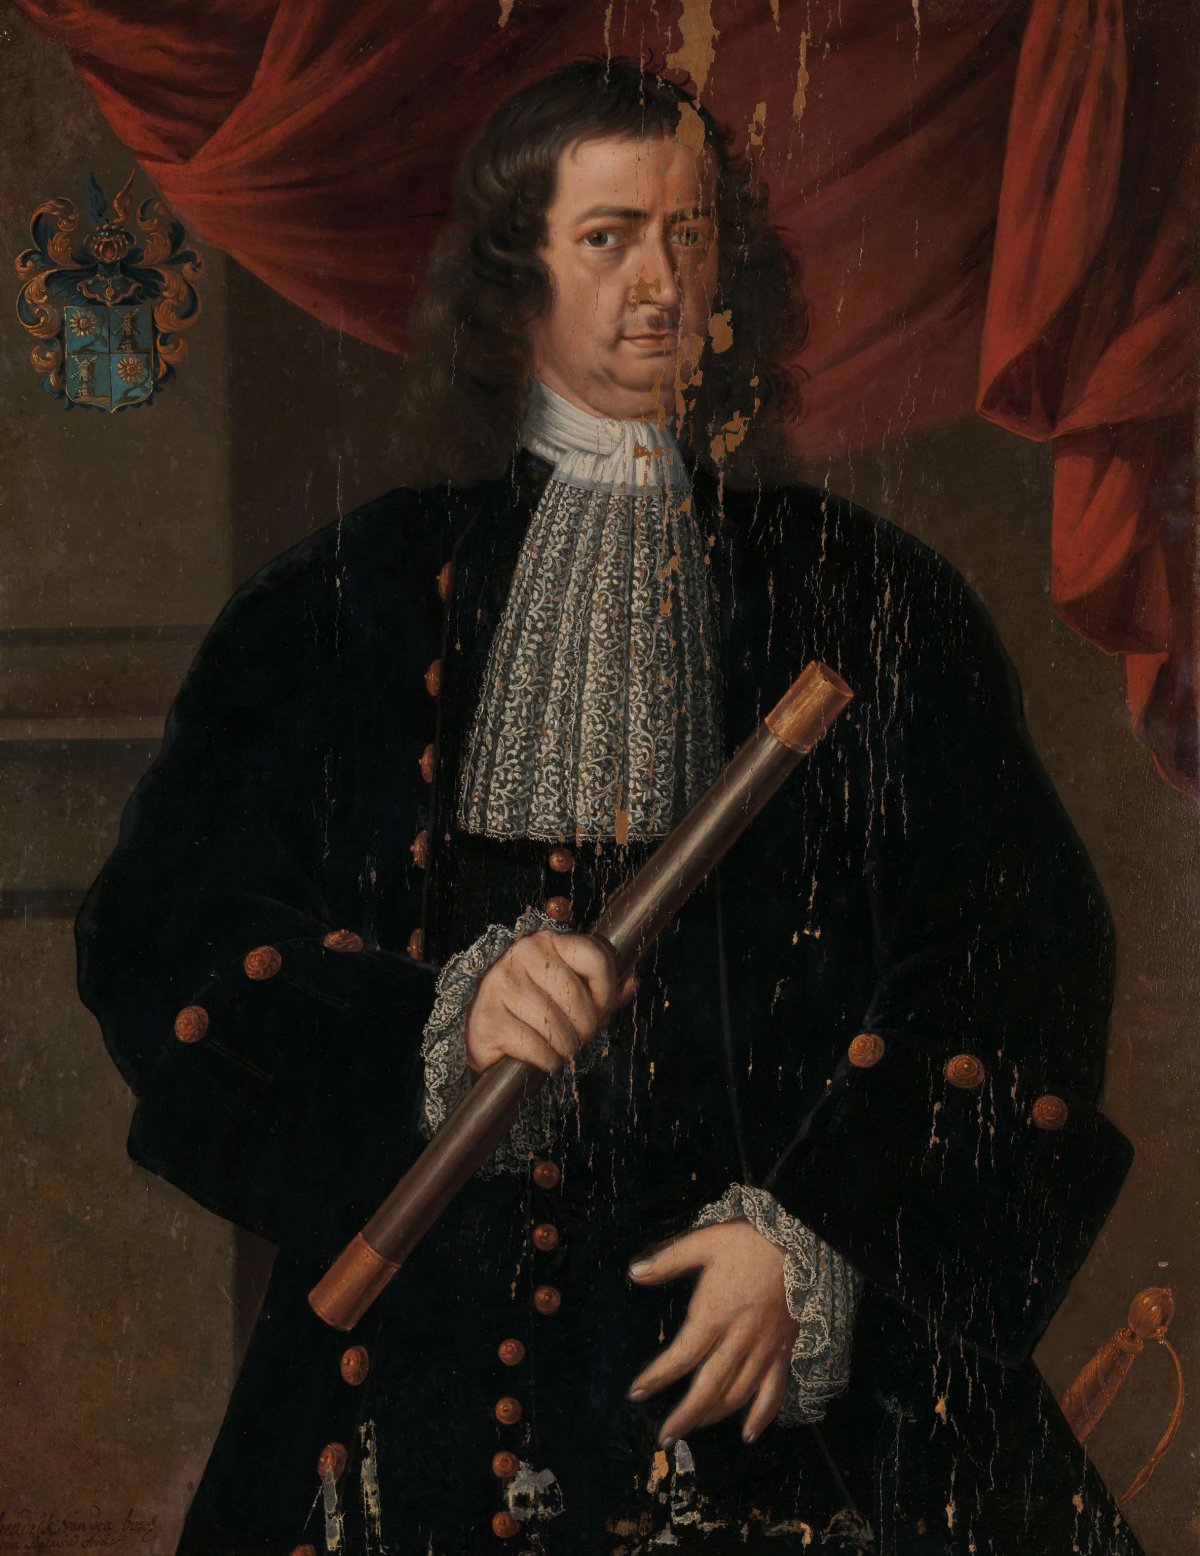 Christoffel van Swoll (1713-1718), Hendrik van den Bosch, 1713 - 1718